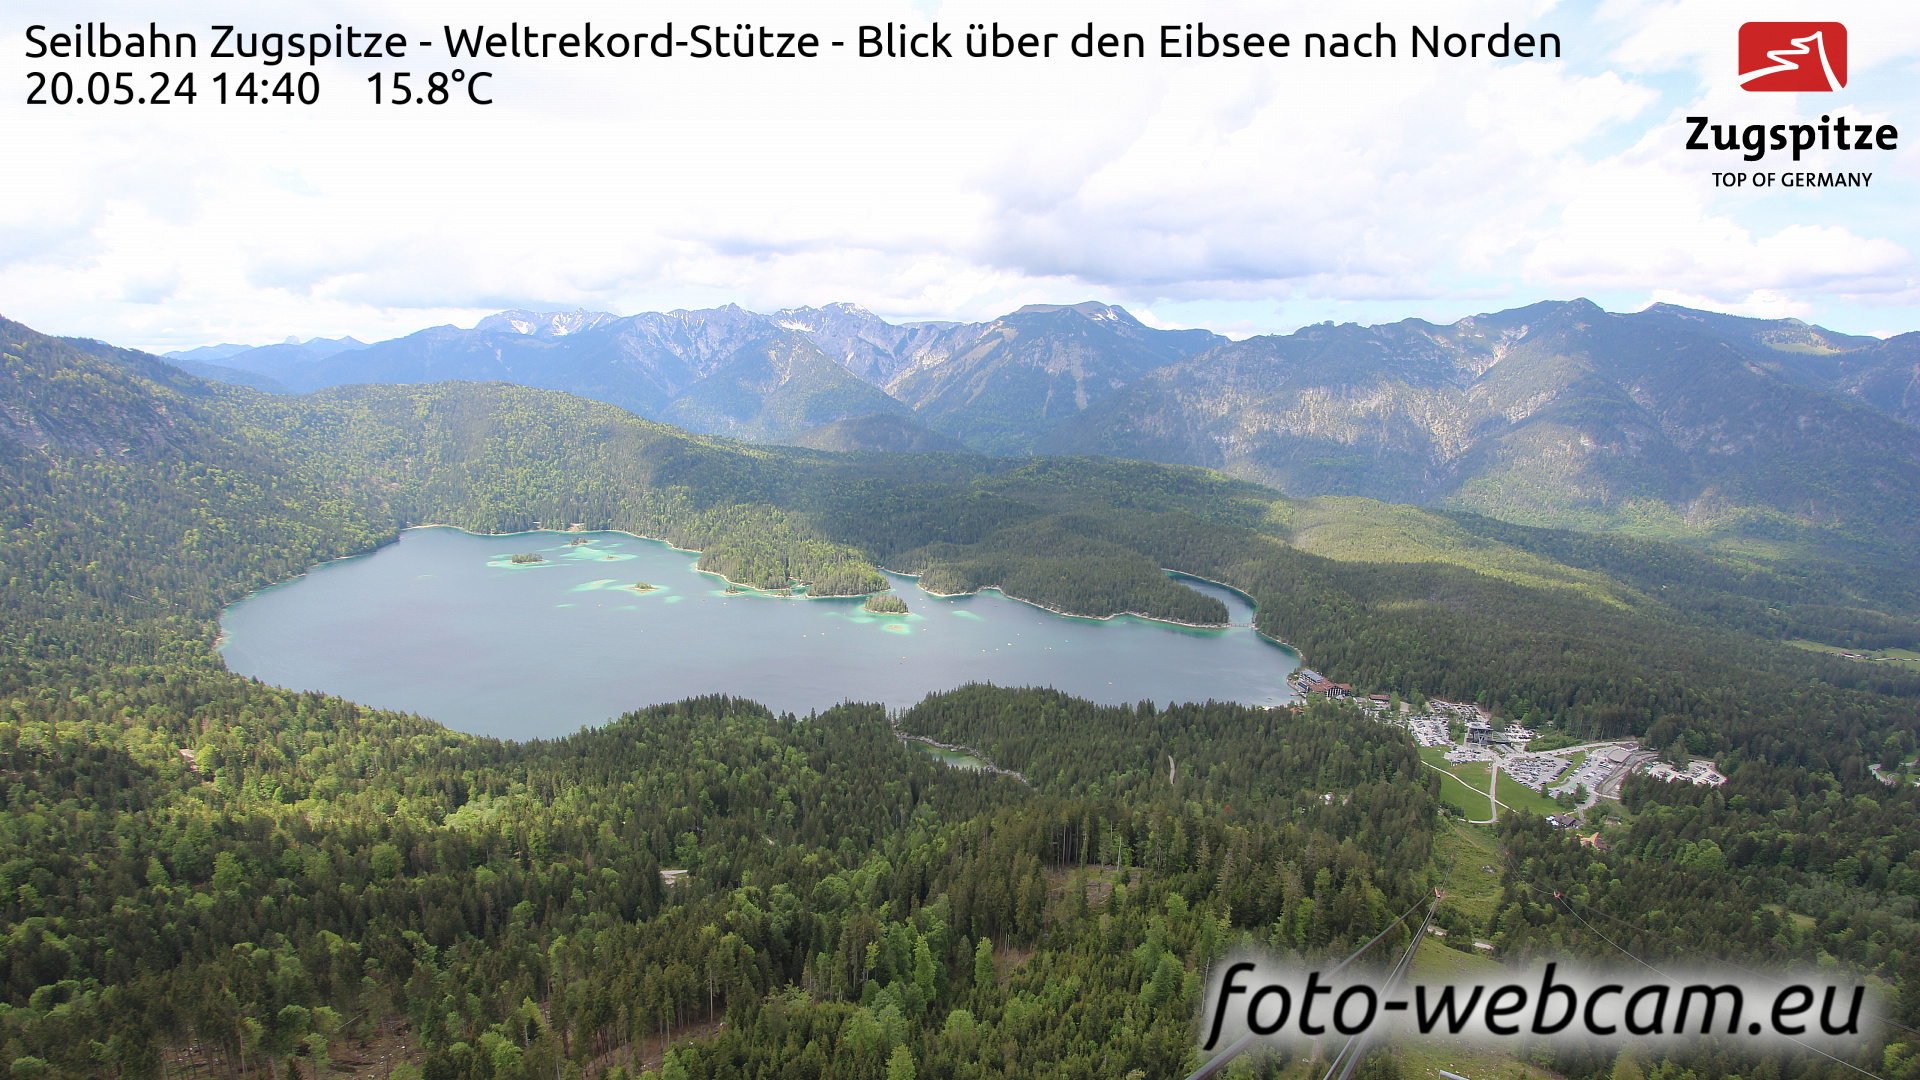 Zugspitze Wed. 14:49